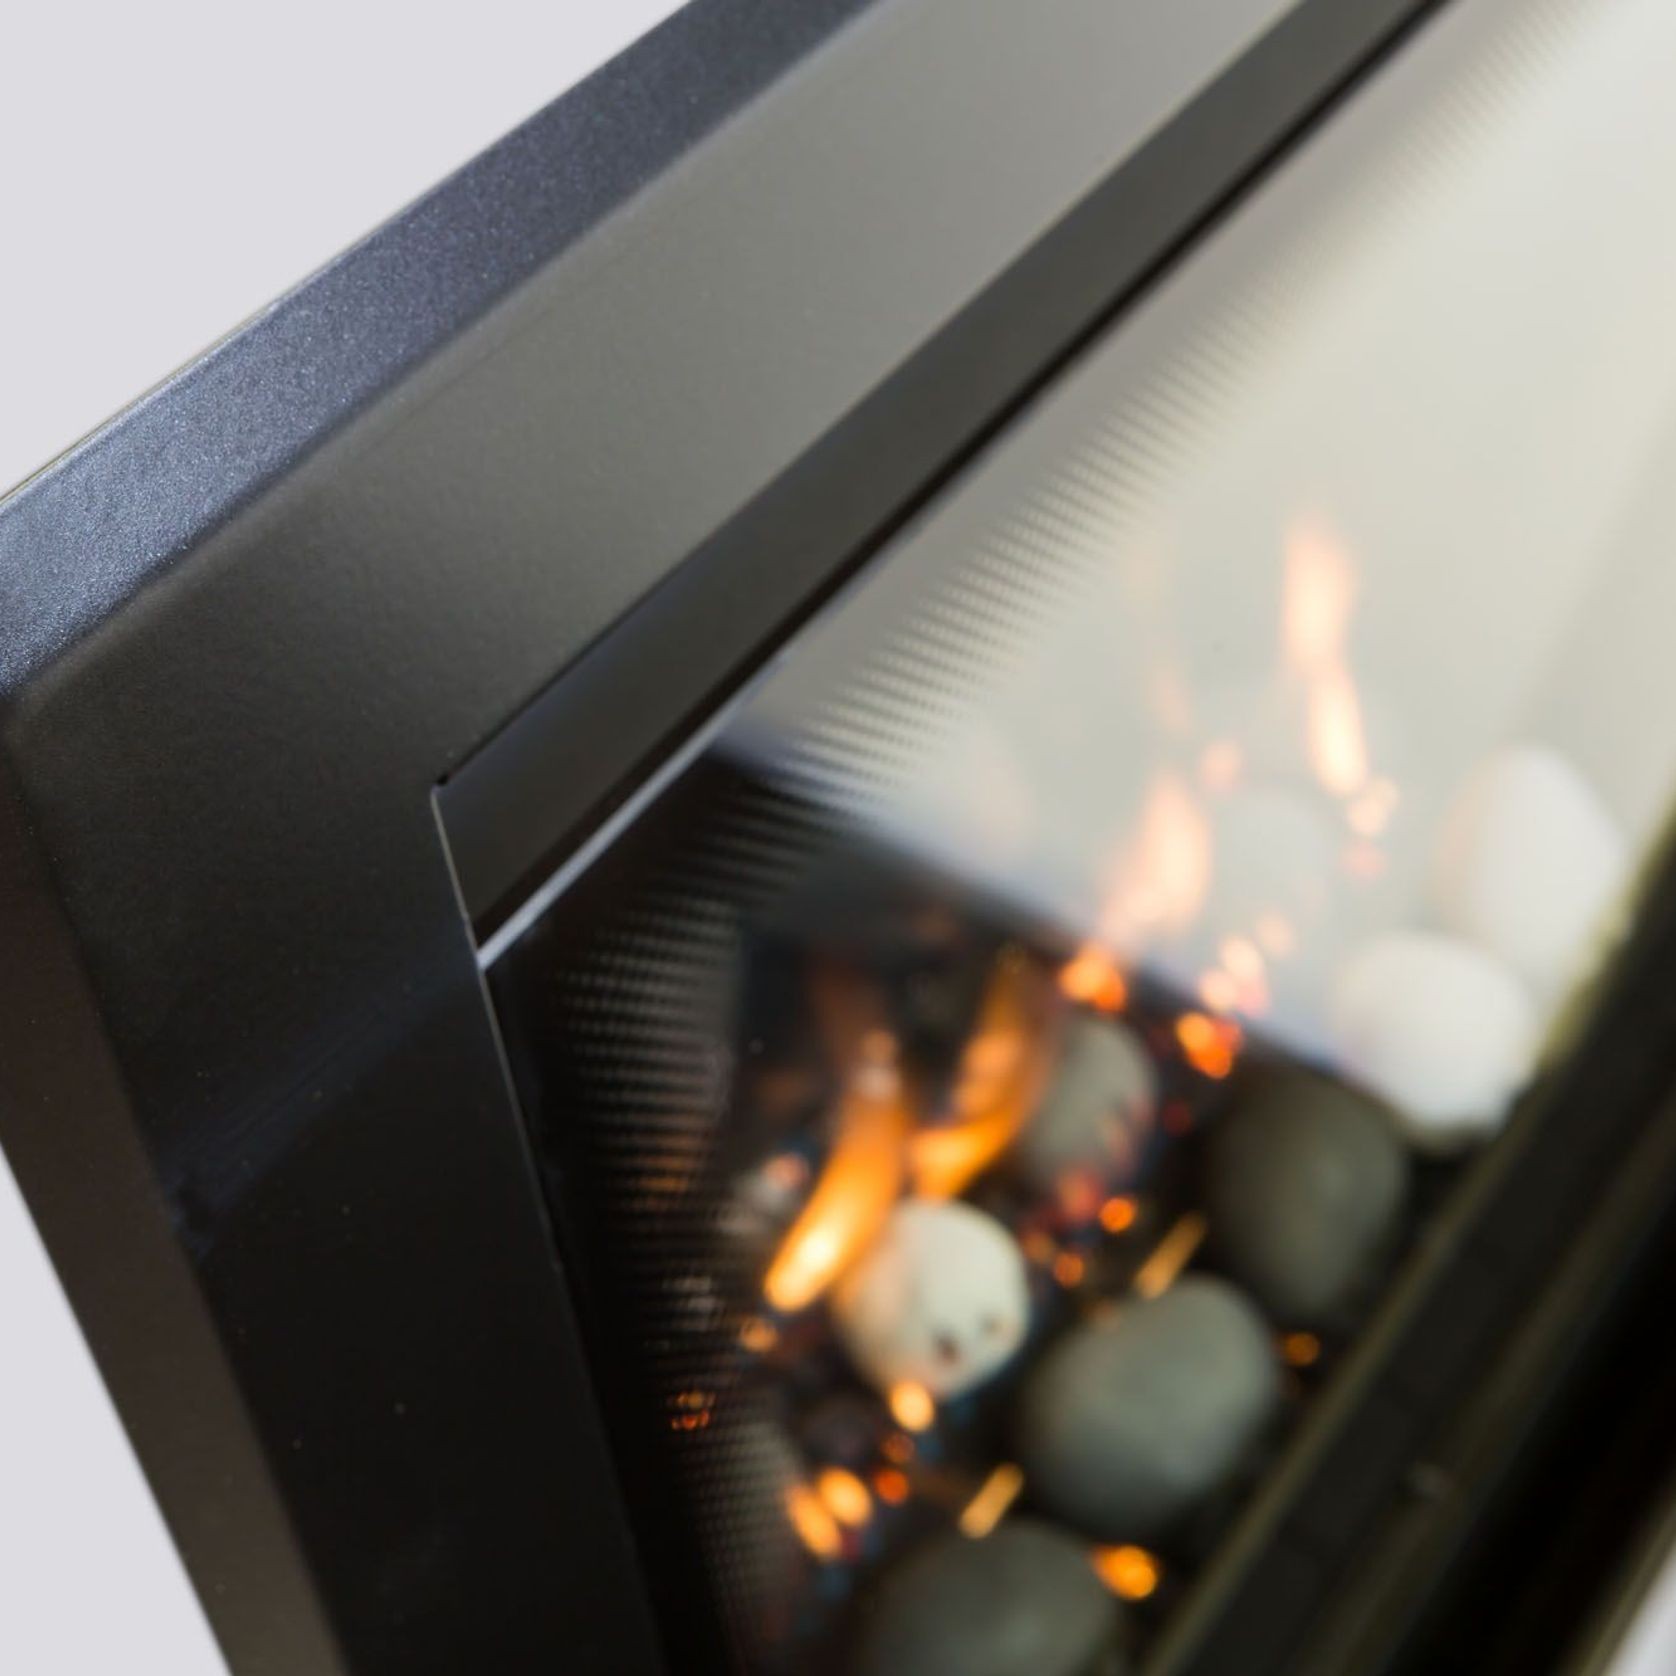 Rinnai Ember Inbuilt Gas Fireplace gallery detail image